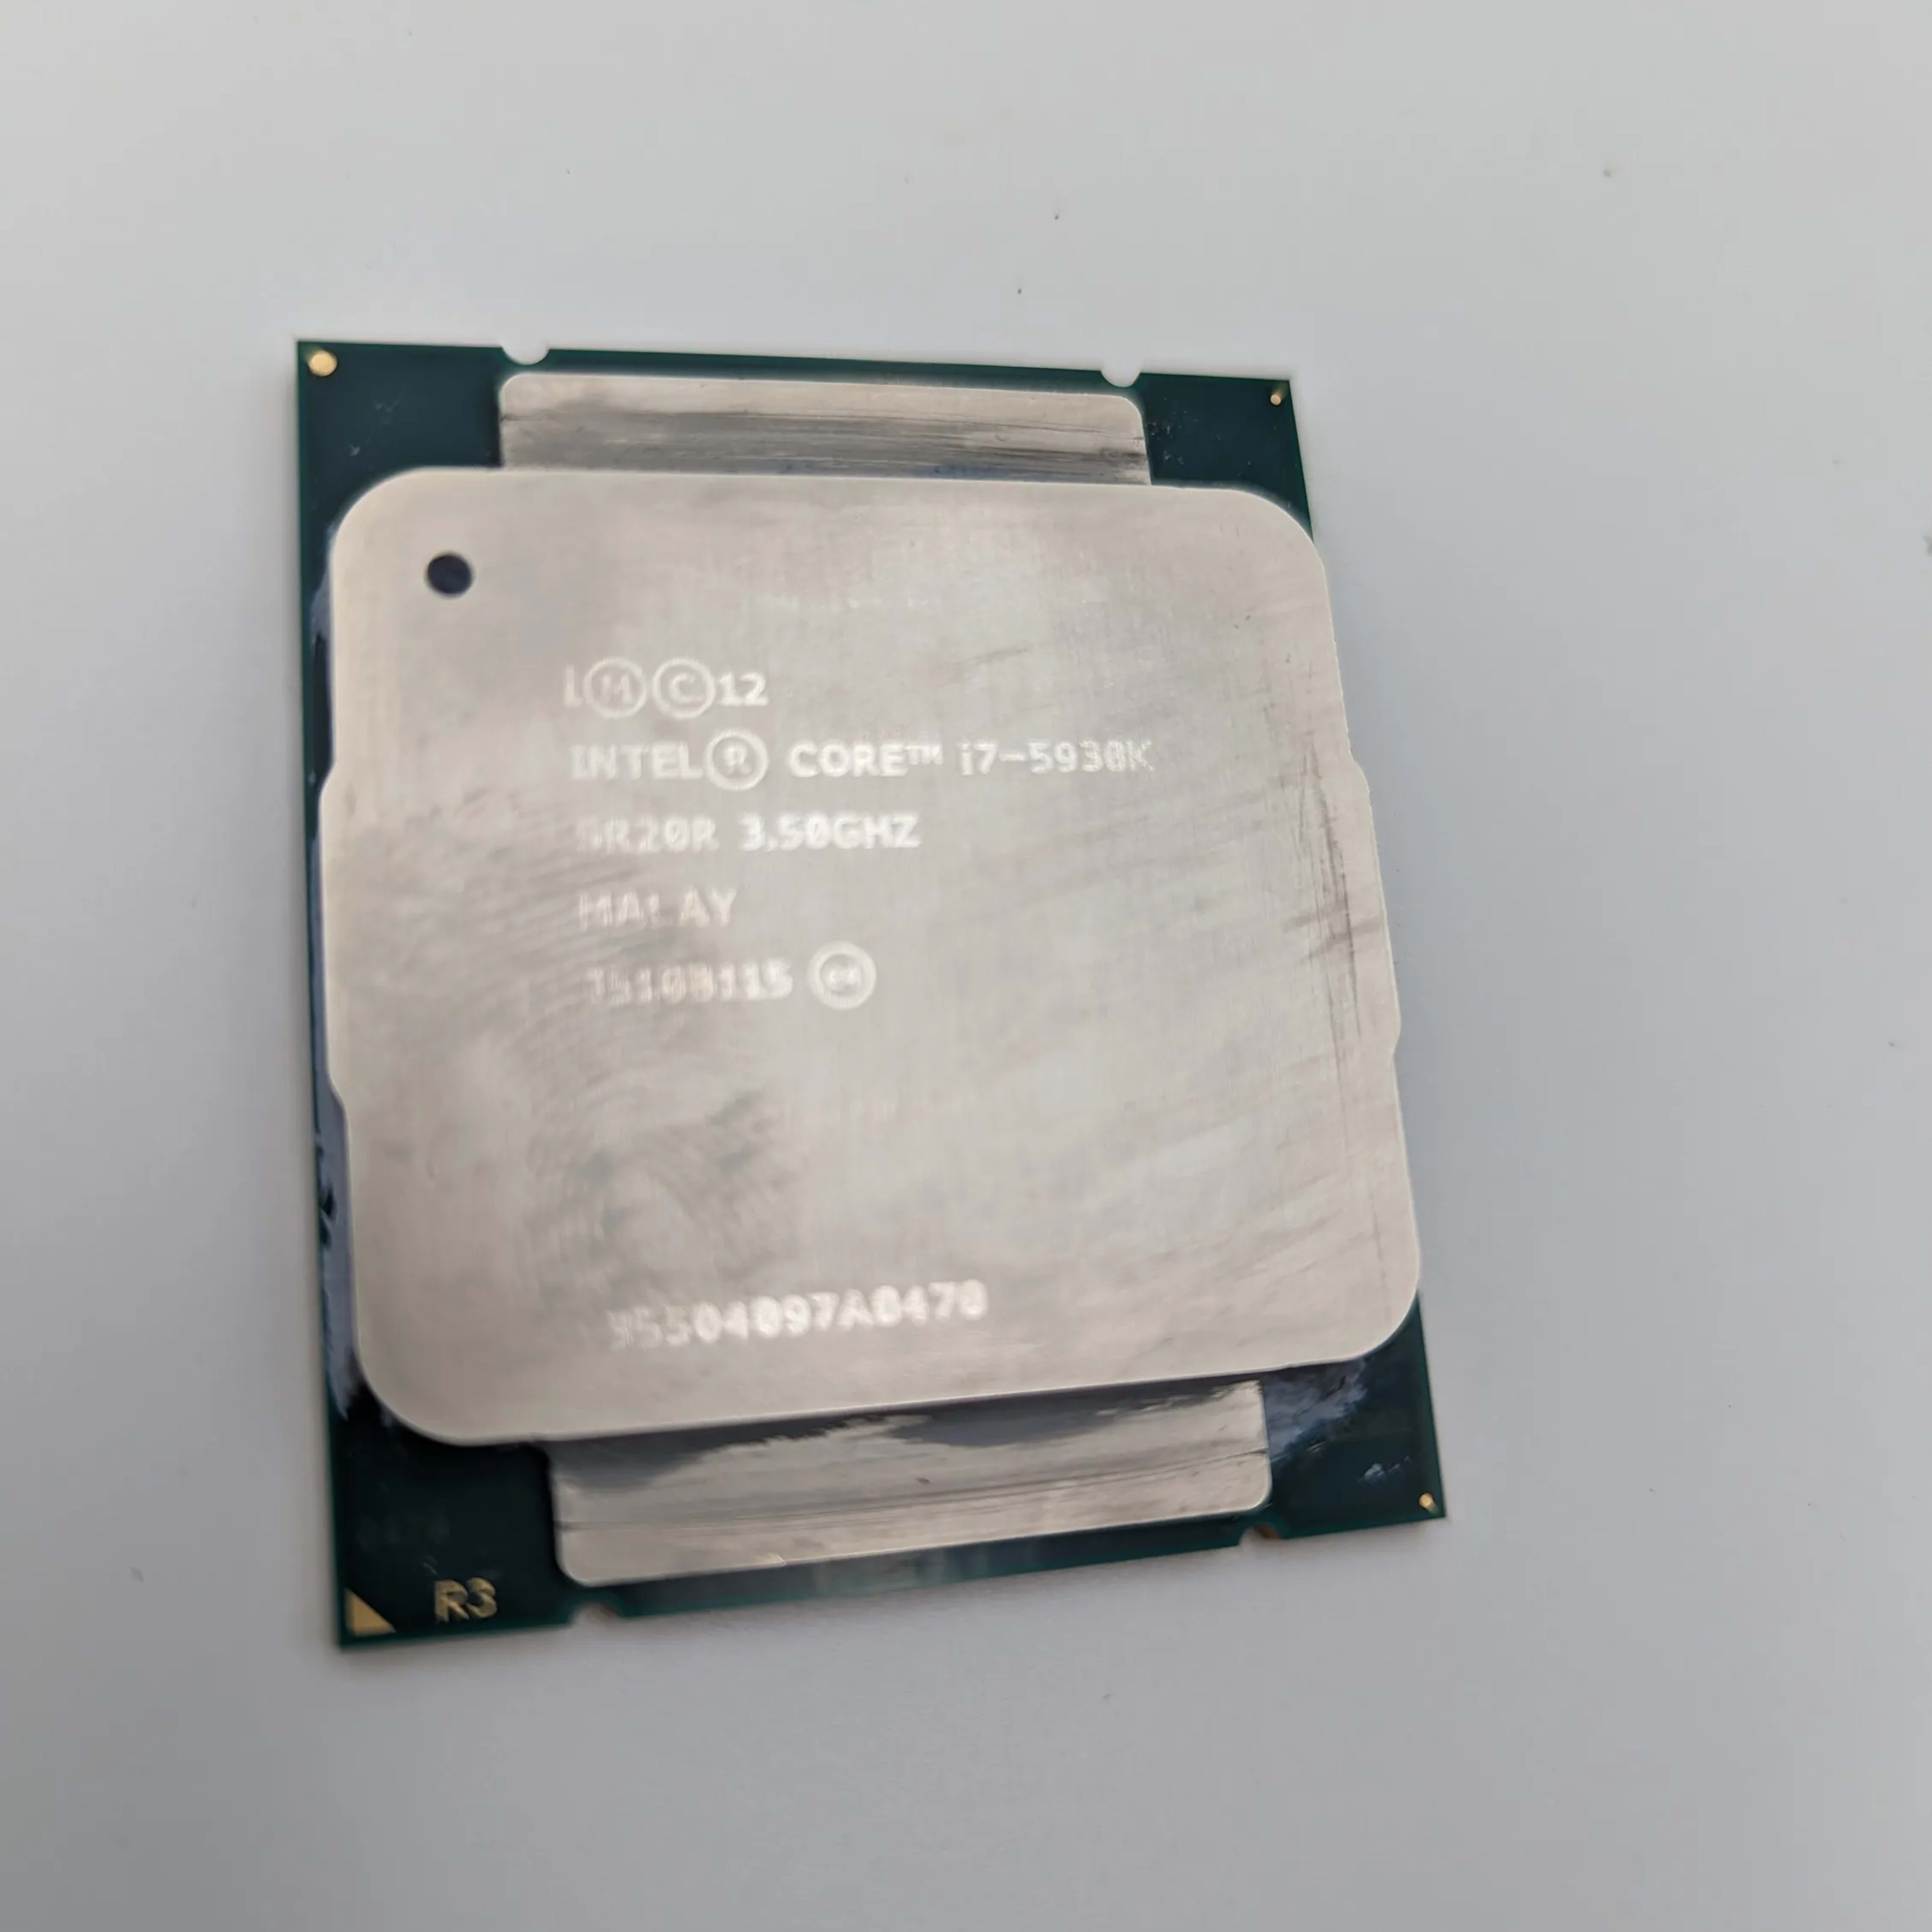 Intel i7-5930k @3.5 ghz 6 core CPU. LGA 2011